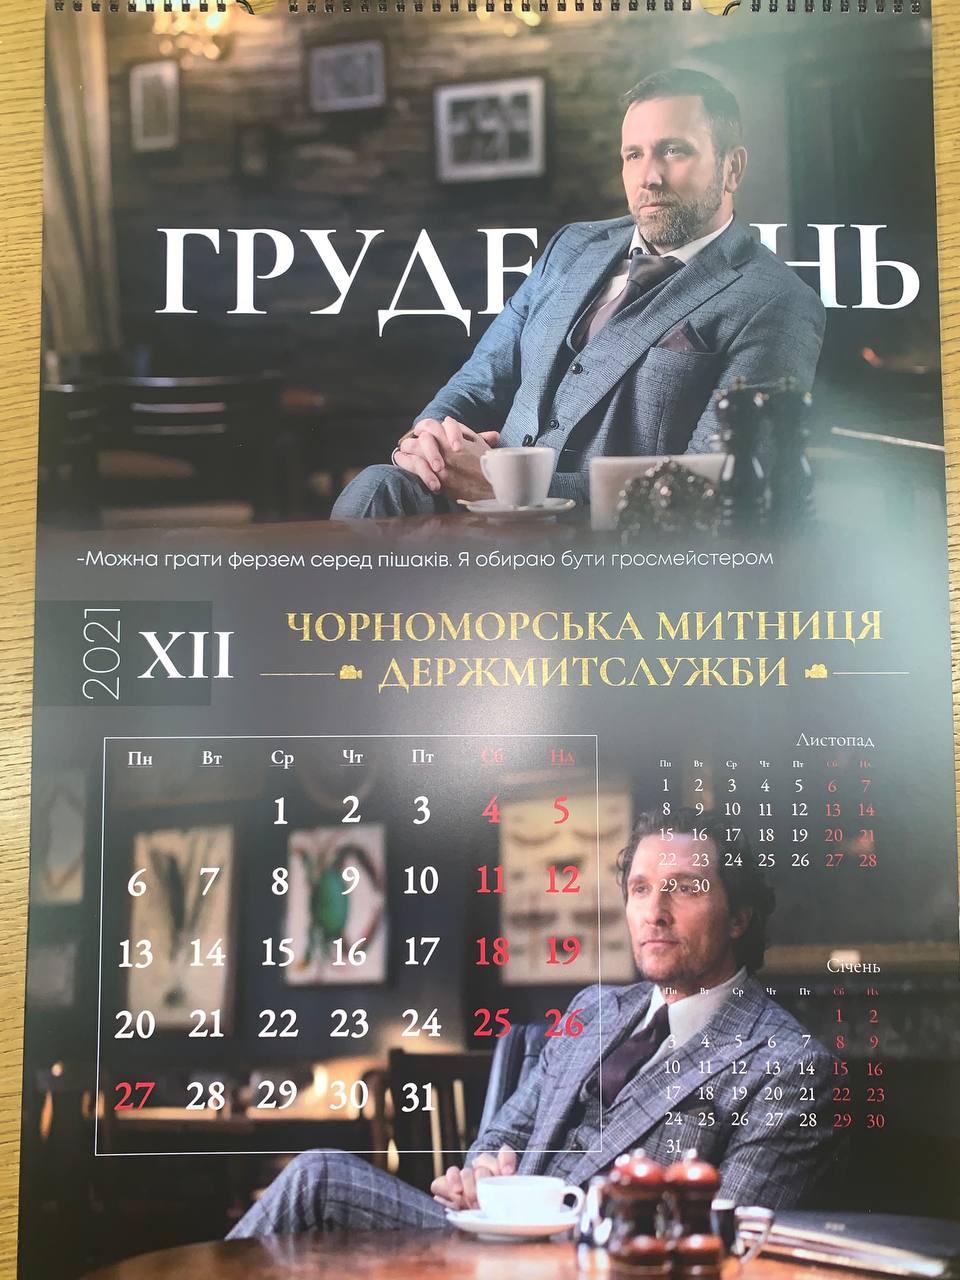 Украинские таможенники снялись в календаре на 2021 год в образе бандитов из фильма Гая Ричи. Фото: Твиттер